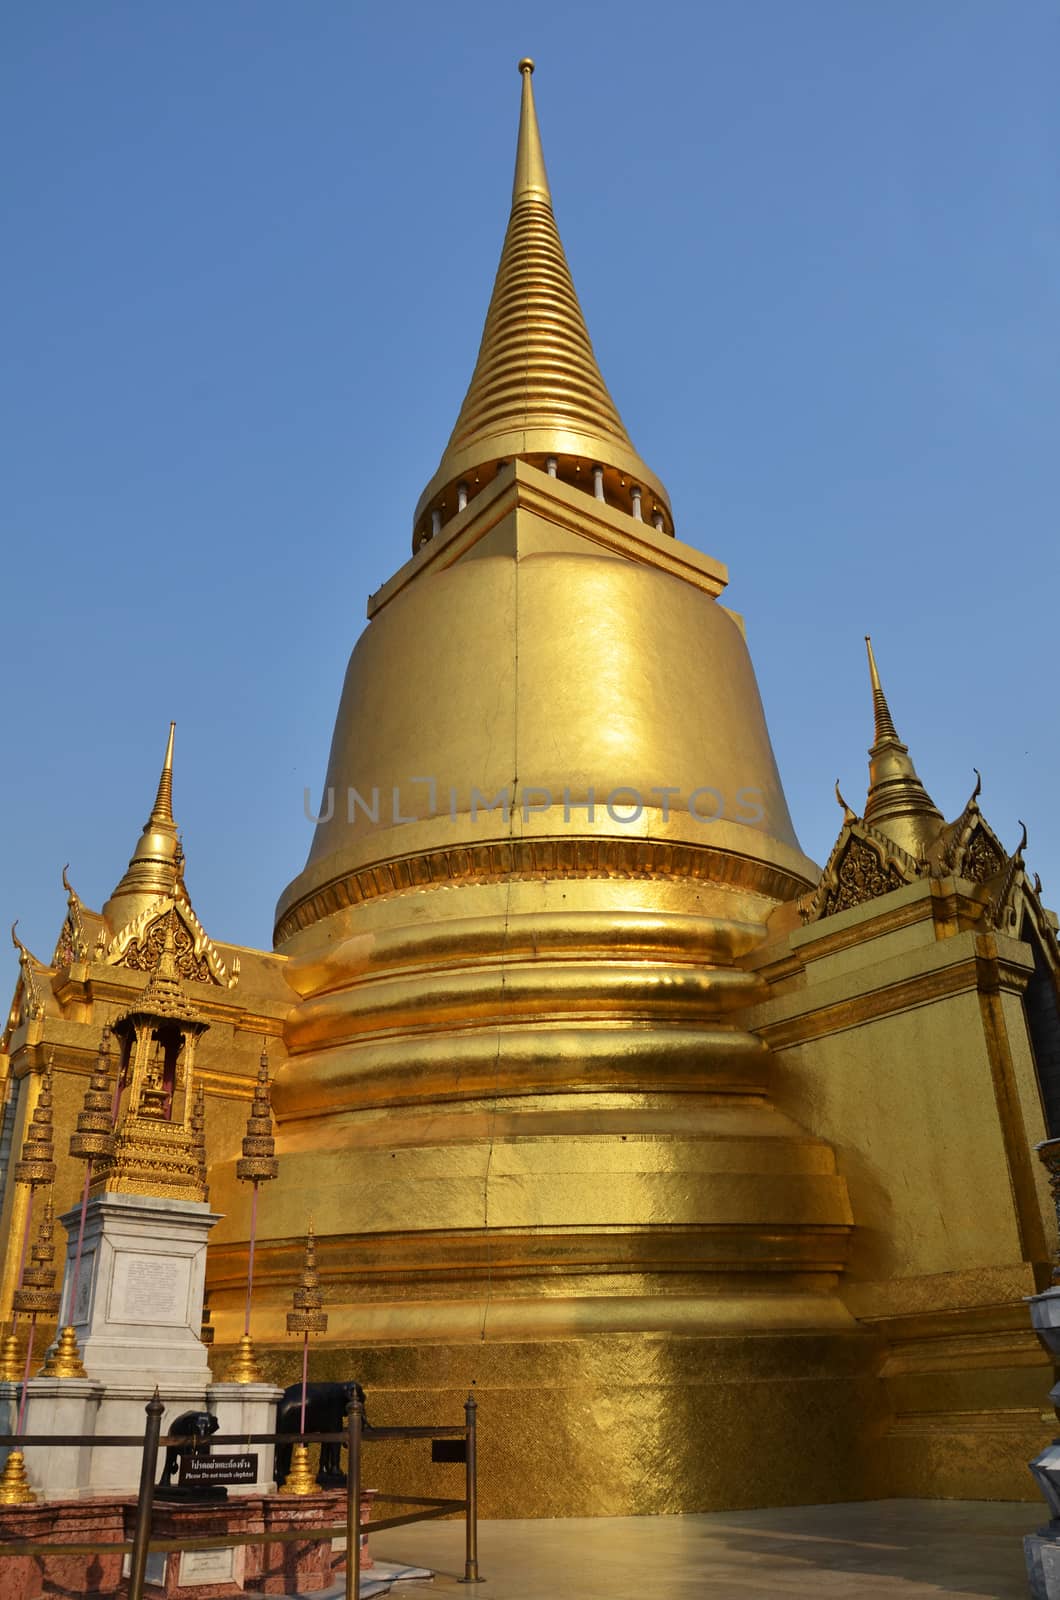 Golden pagoda in Grand Palace, Bangkok, Thailand by tang90246